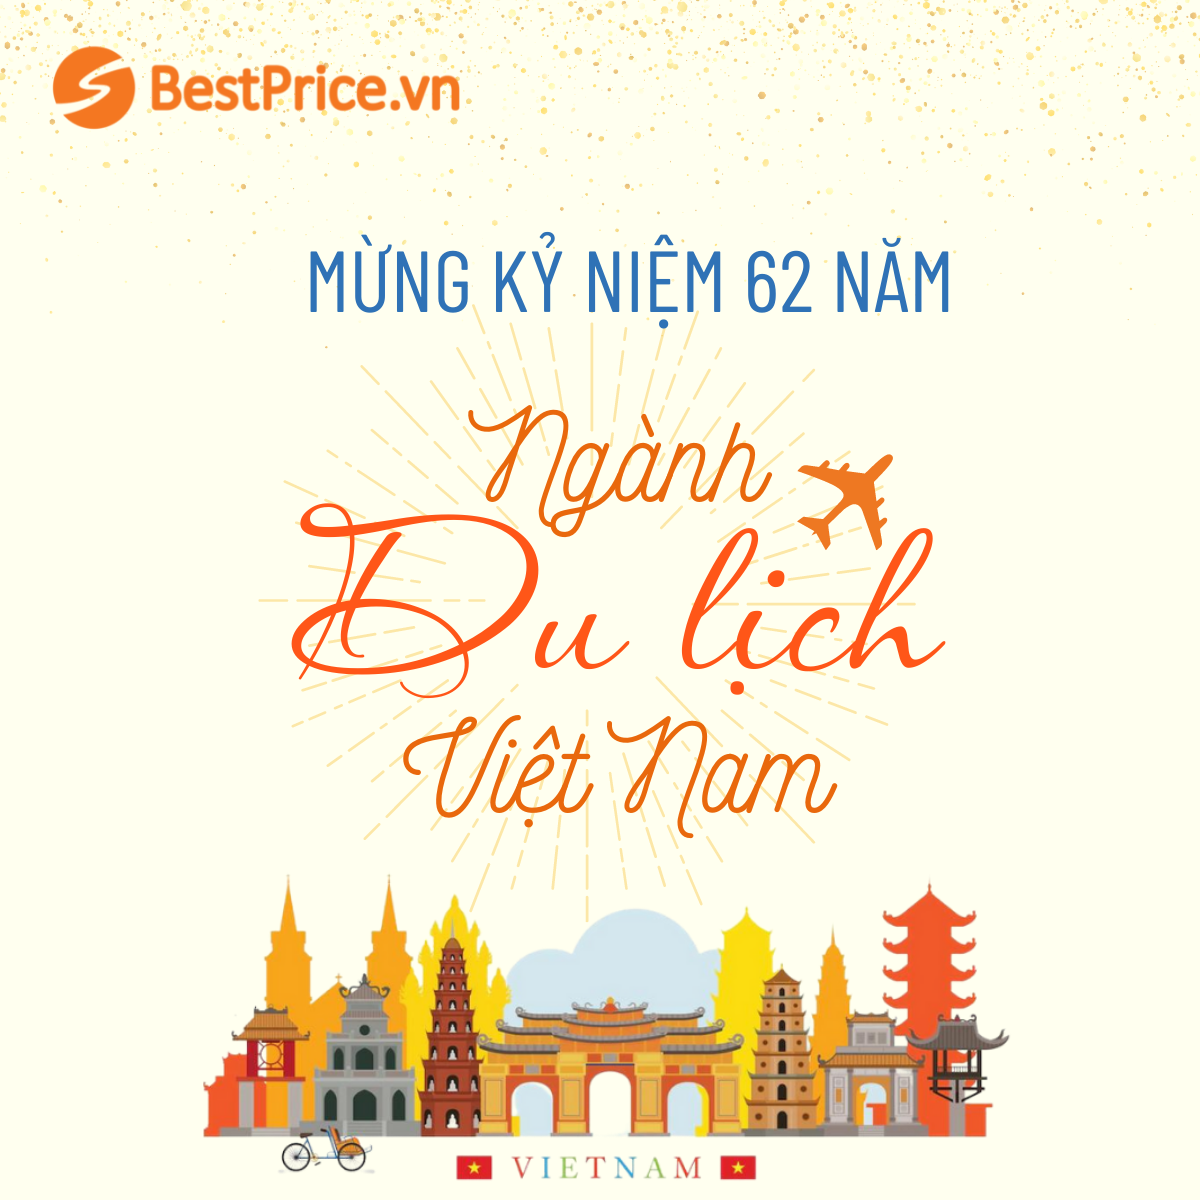 Mừng kỷ niệm 62 năm ngày thành lập ngành Du lịch Việt Nam